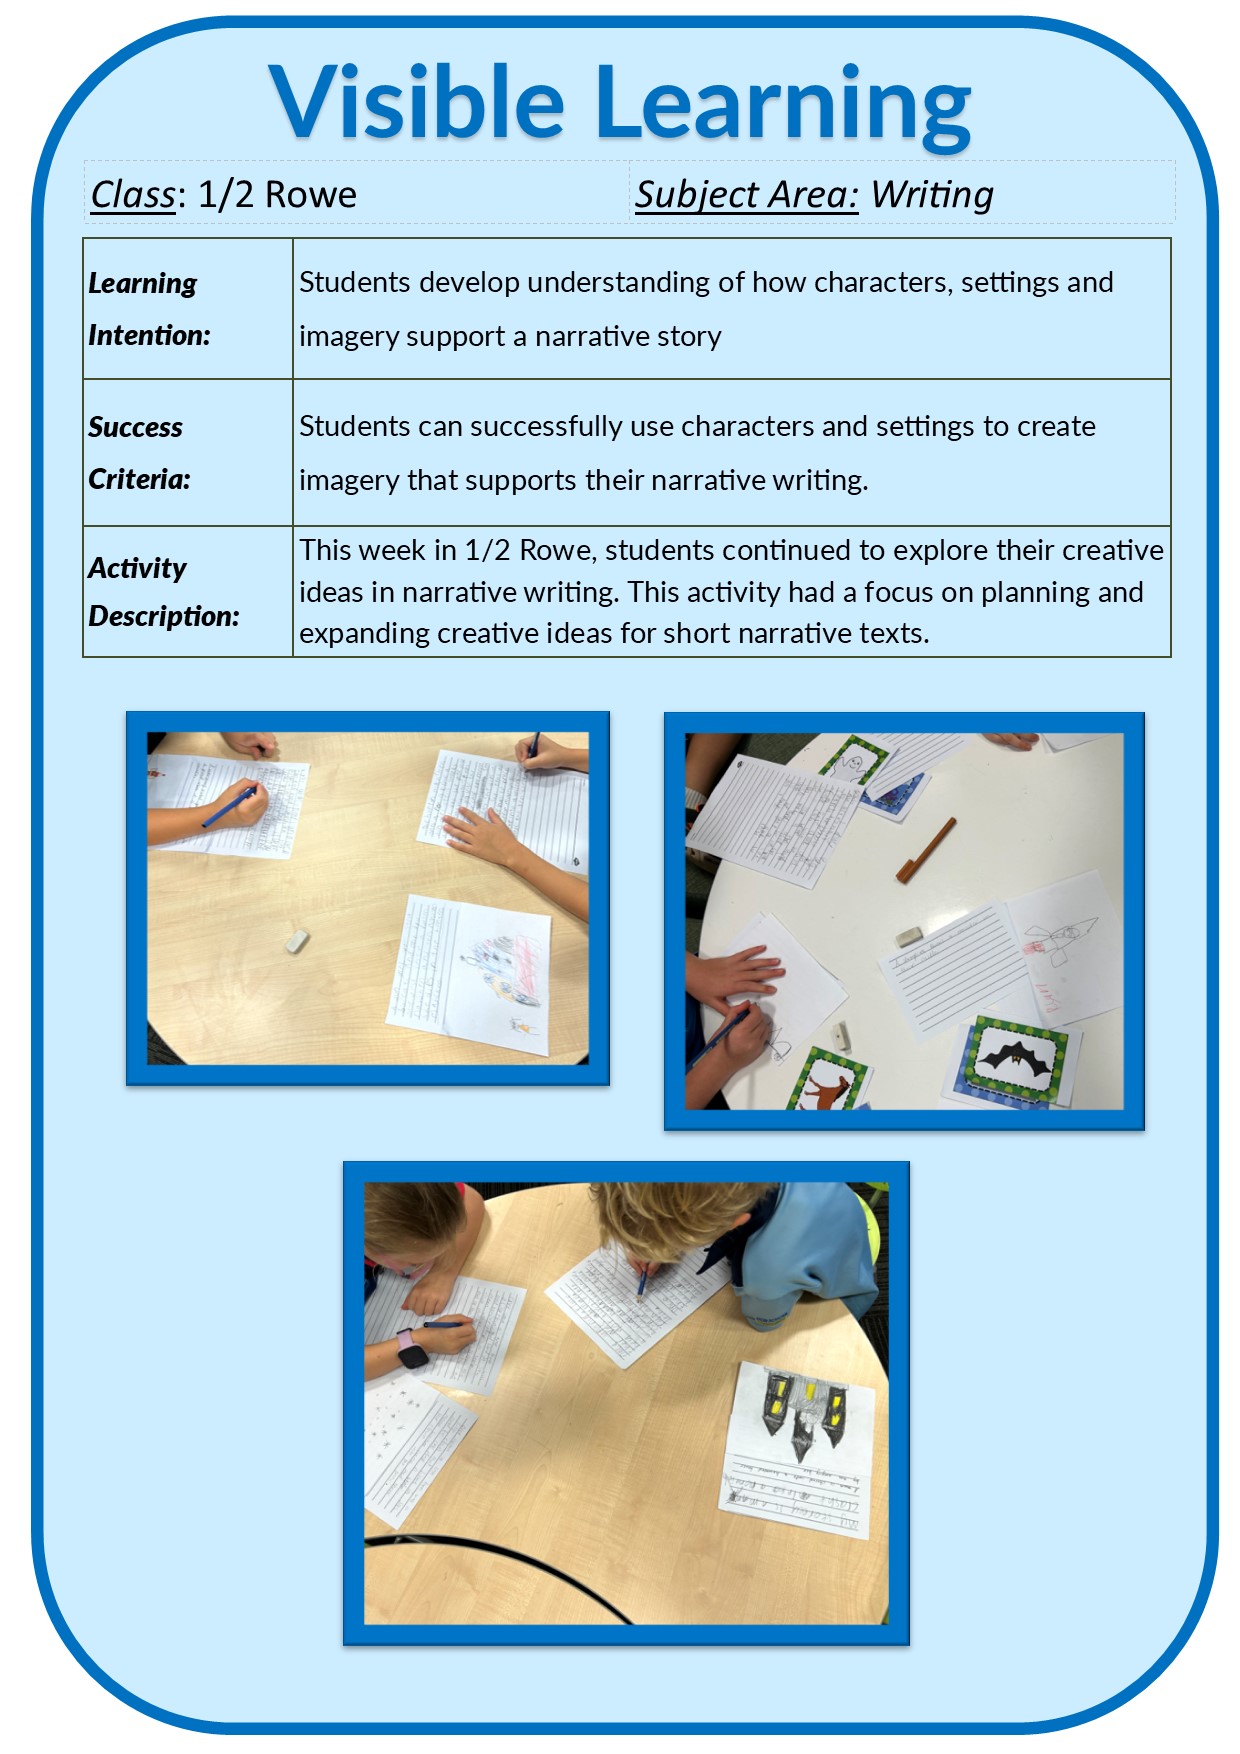 Visible Learning/1-2 Rowe Writing Term 4 Week 3-2.jpg